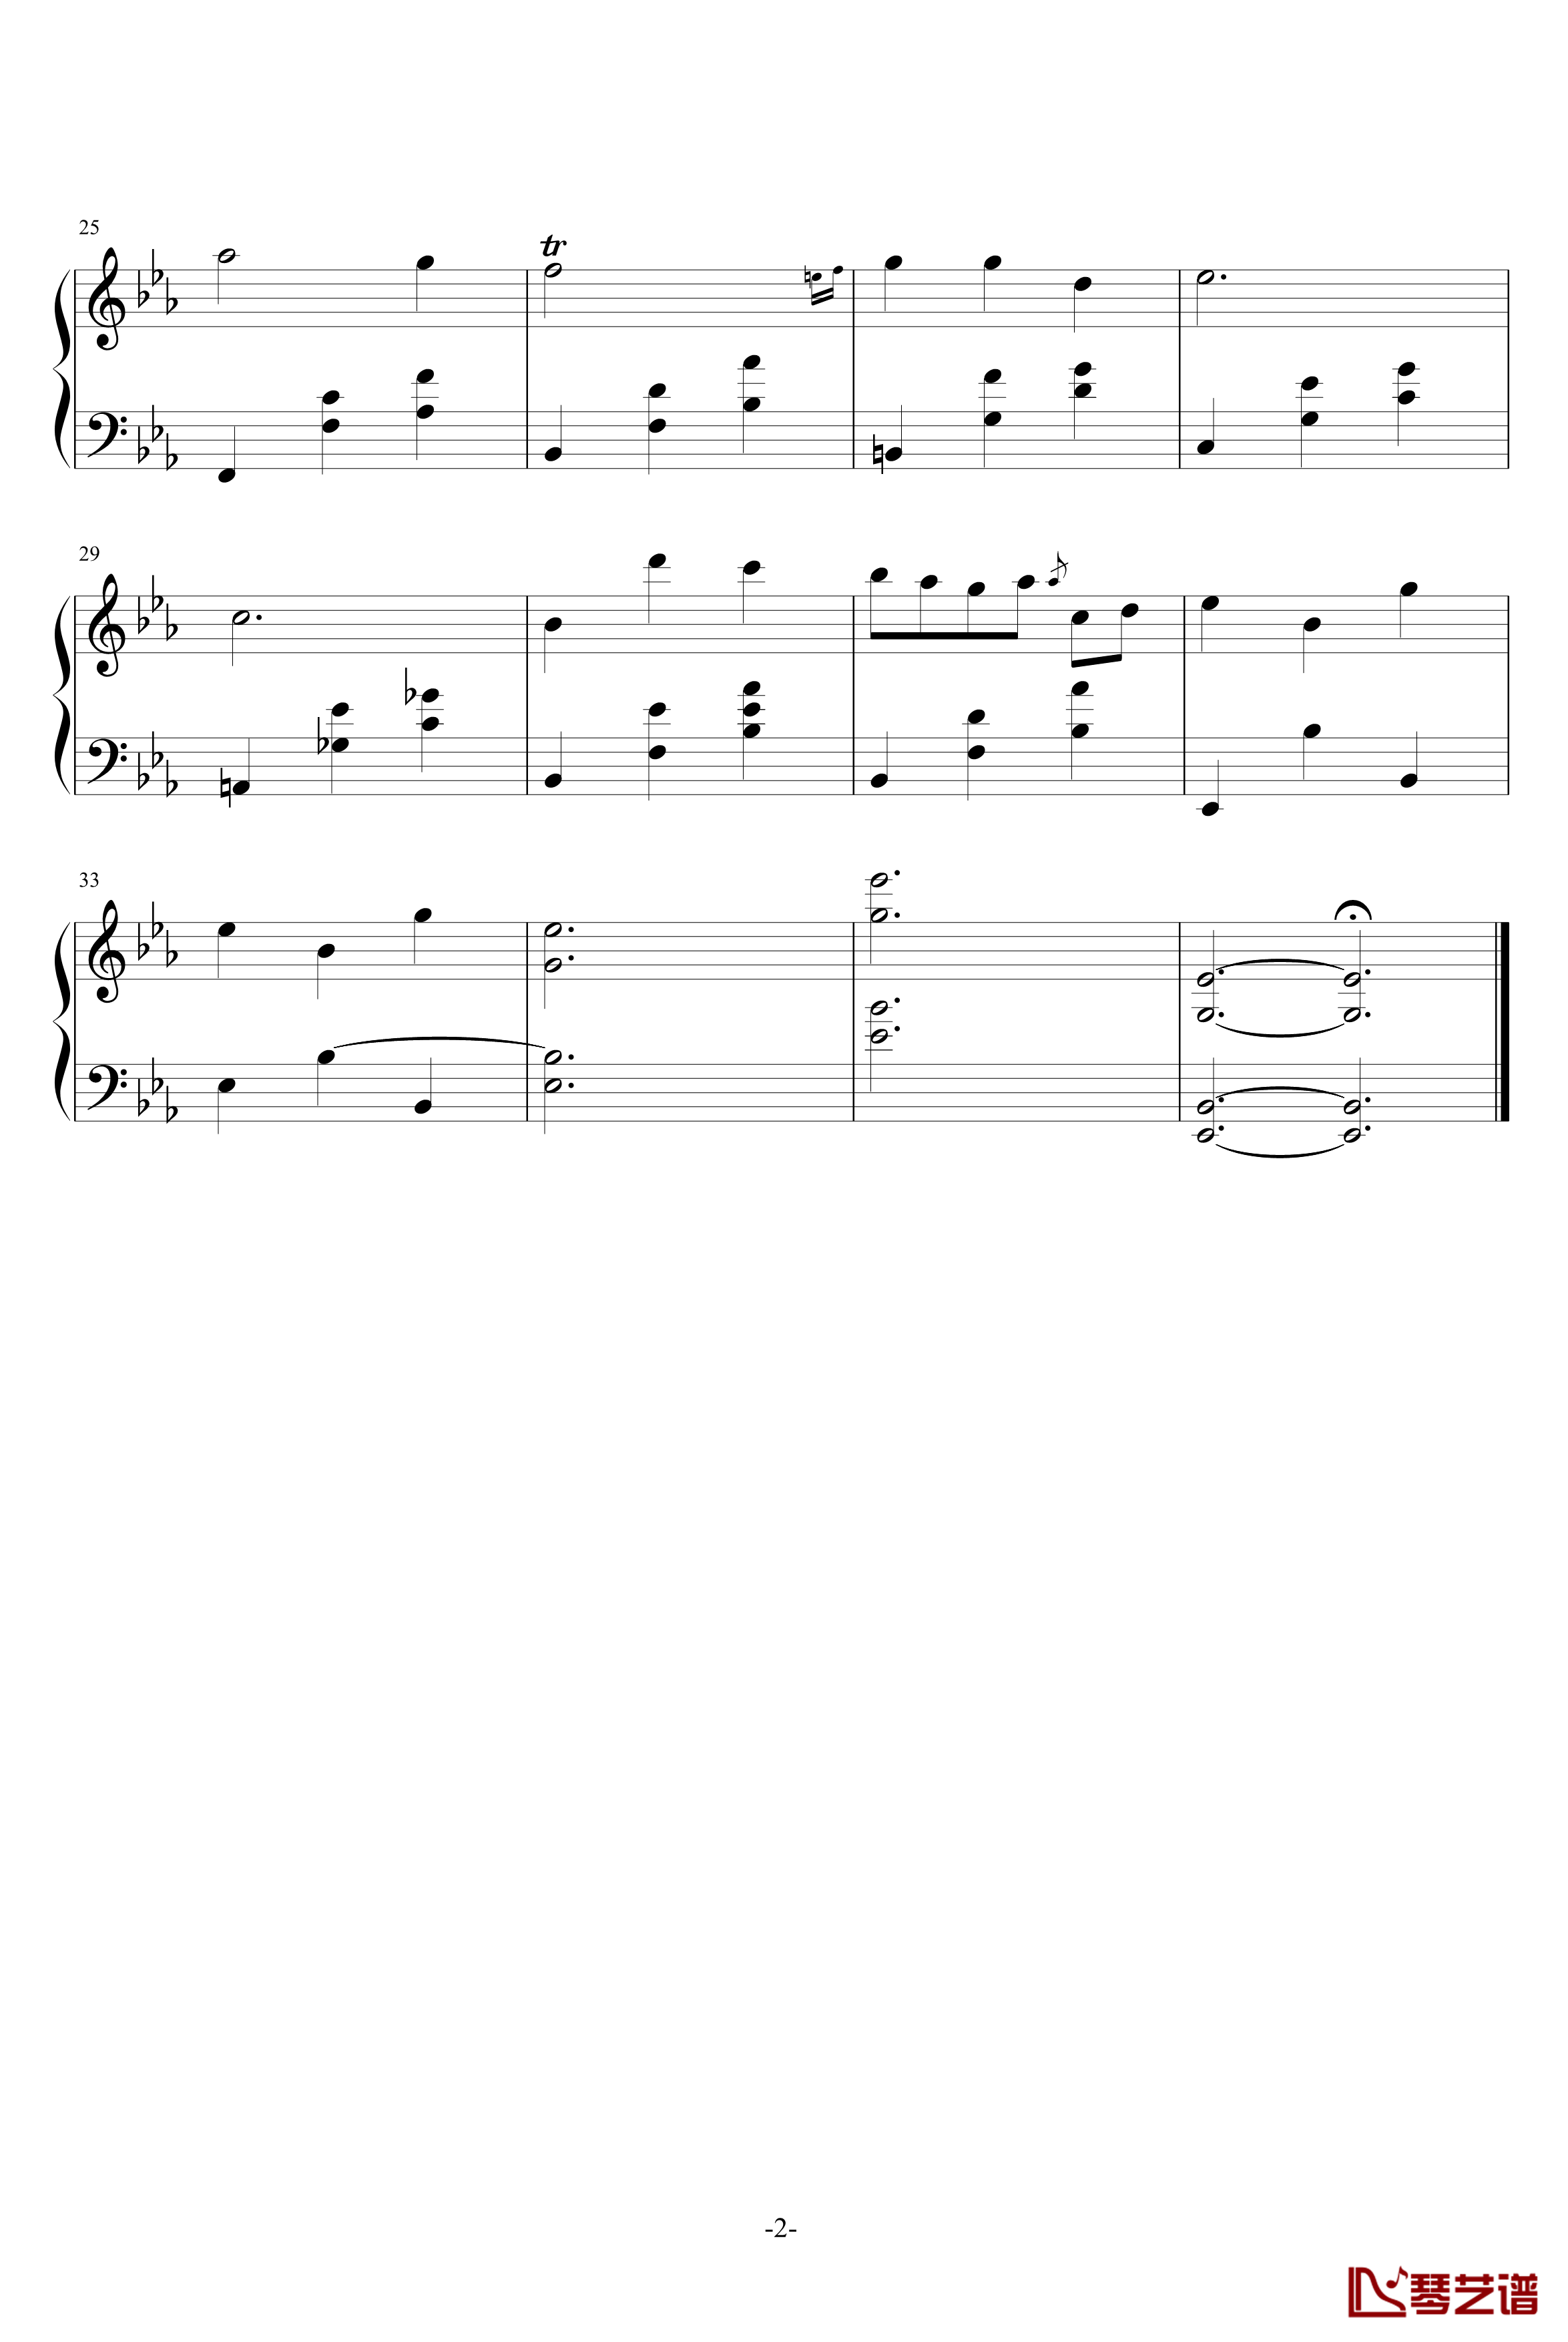 夜曲钢琴谱-简易版-肖邦-chopin2